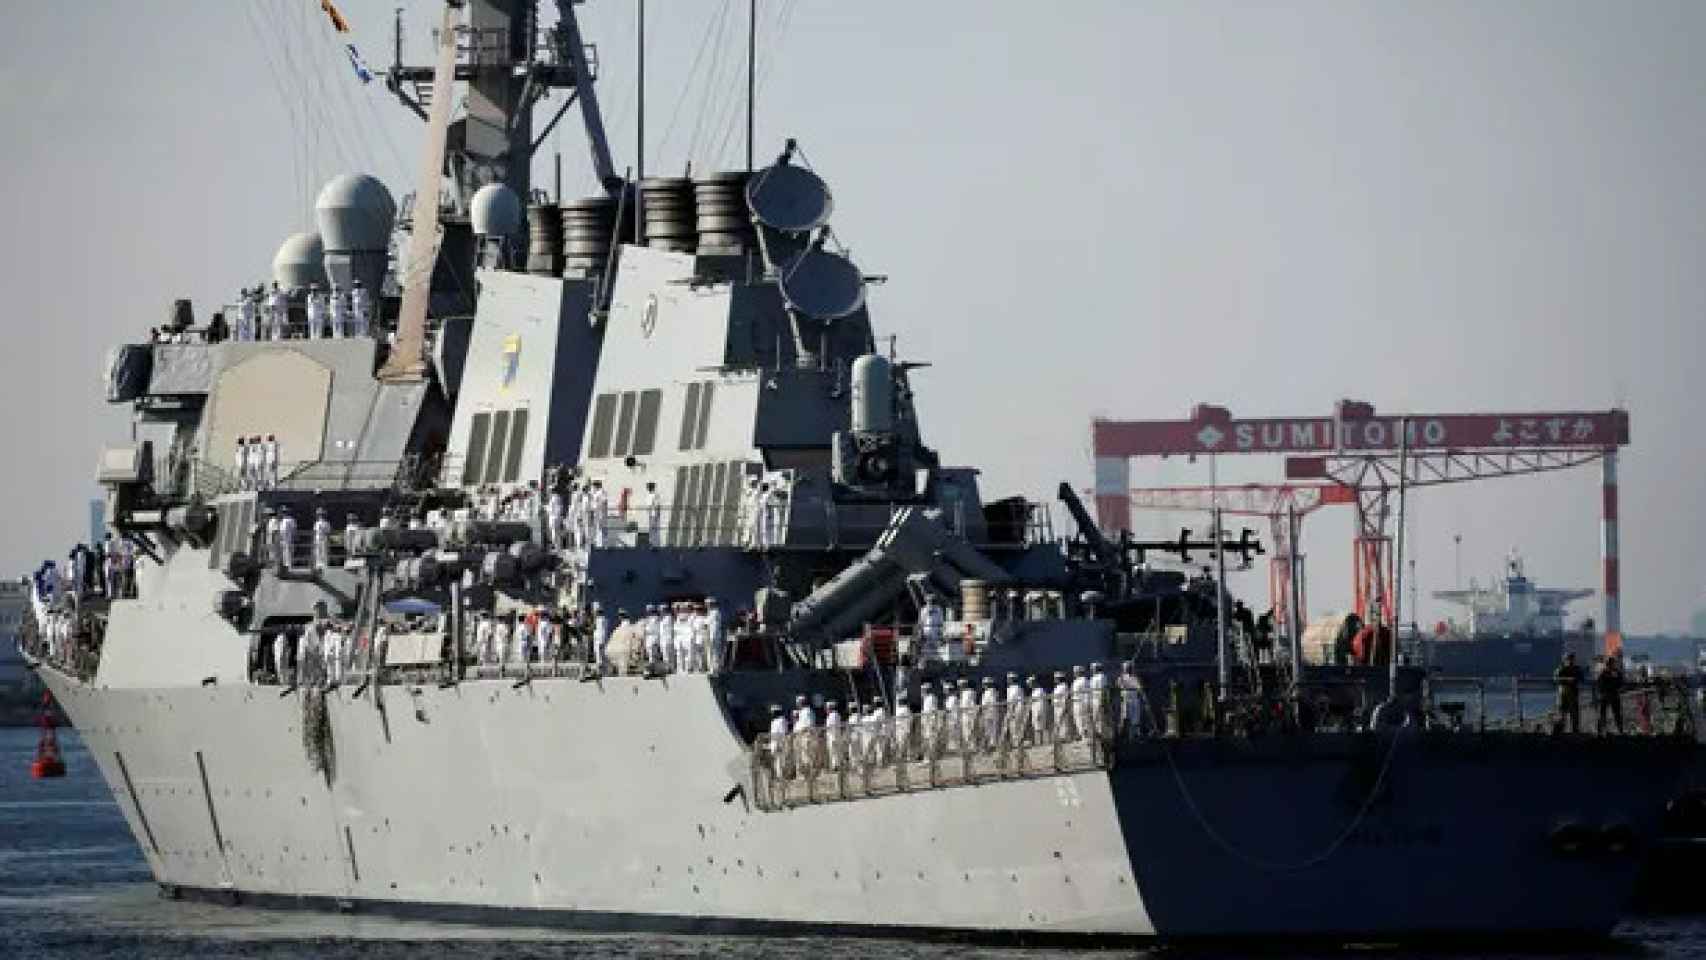 Imagen de archivo del buque de guerra estadounidense que ha entrado en aguas territoriales chinas, según denuncia Pekín.